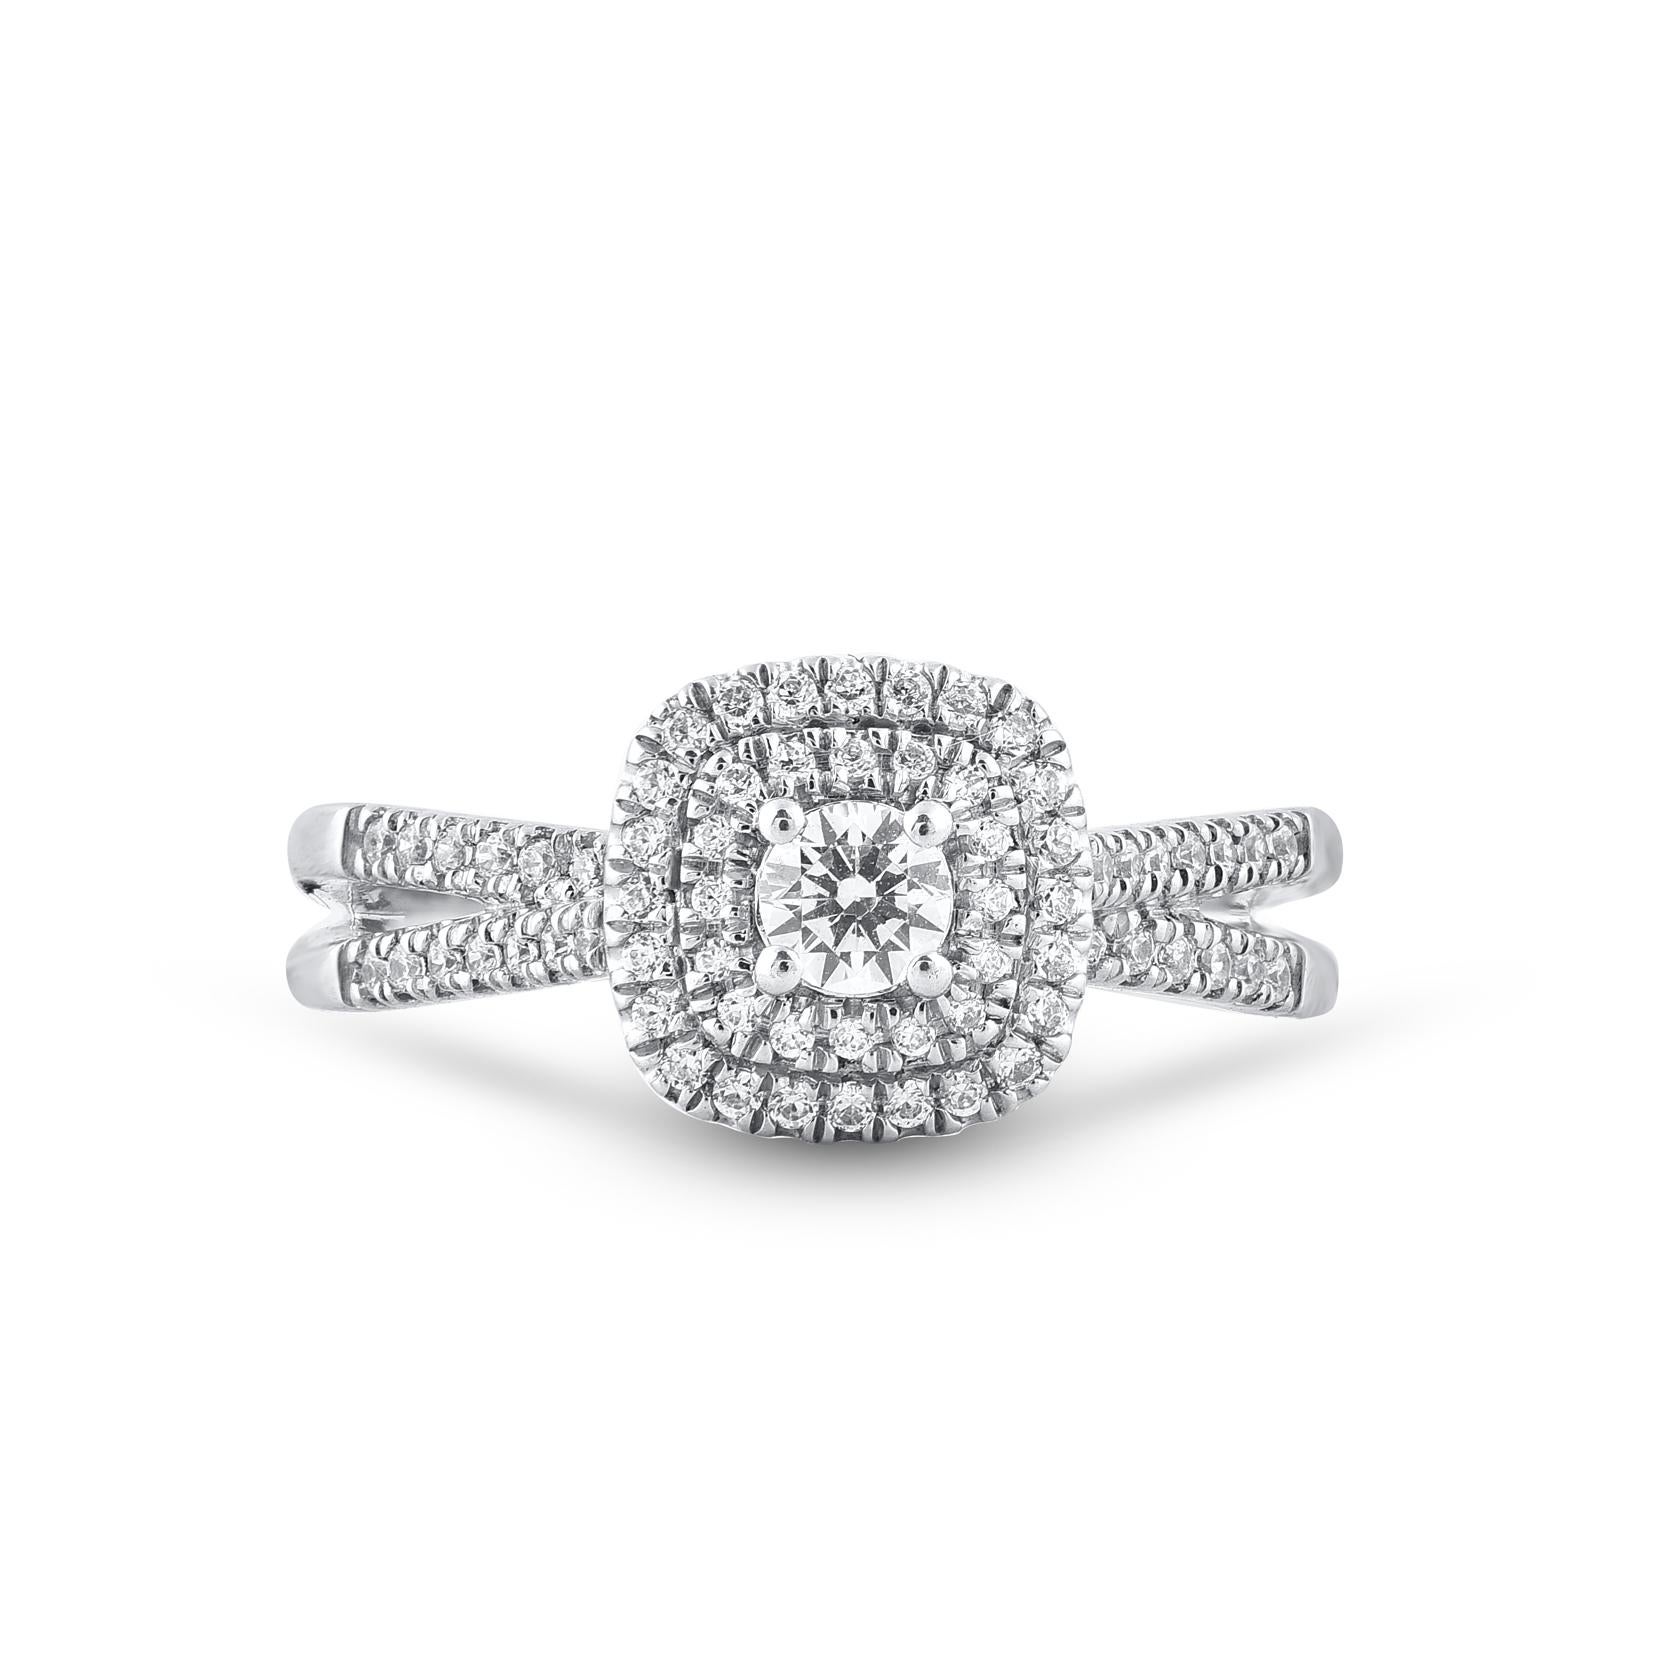 Véritablement exquise, cette bague d'anniversaire en diamant ne manquera pas d'être admirée pour la beauté et l'élégance classiques inhérentes à son design. Cette bague est fabriquée en or blanc 14 carats et est sertie de 71 diamants naturels de